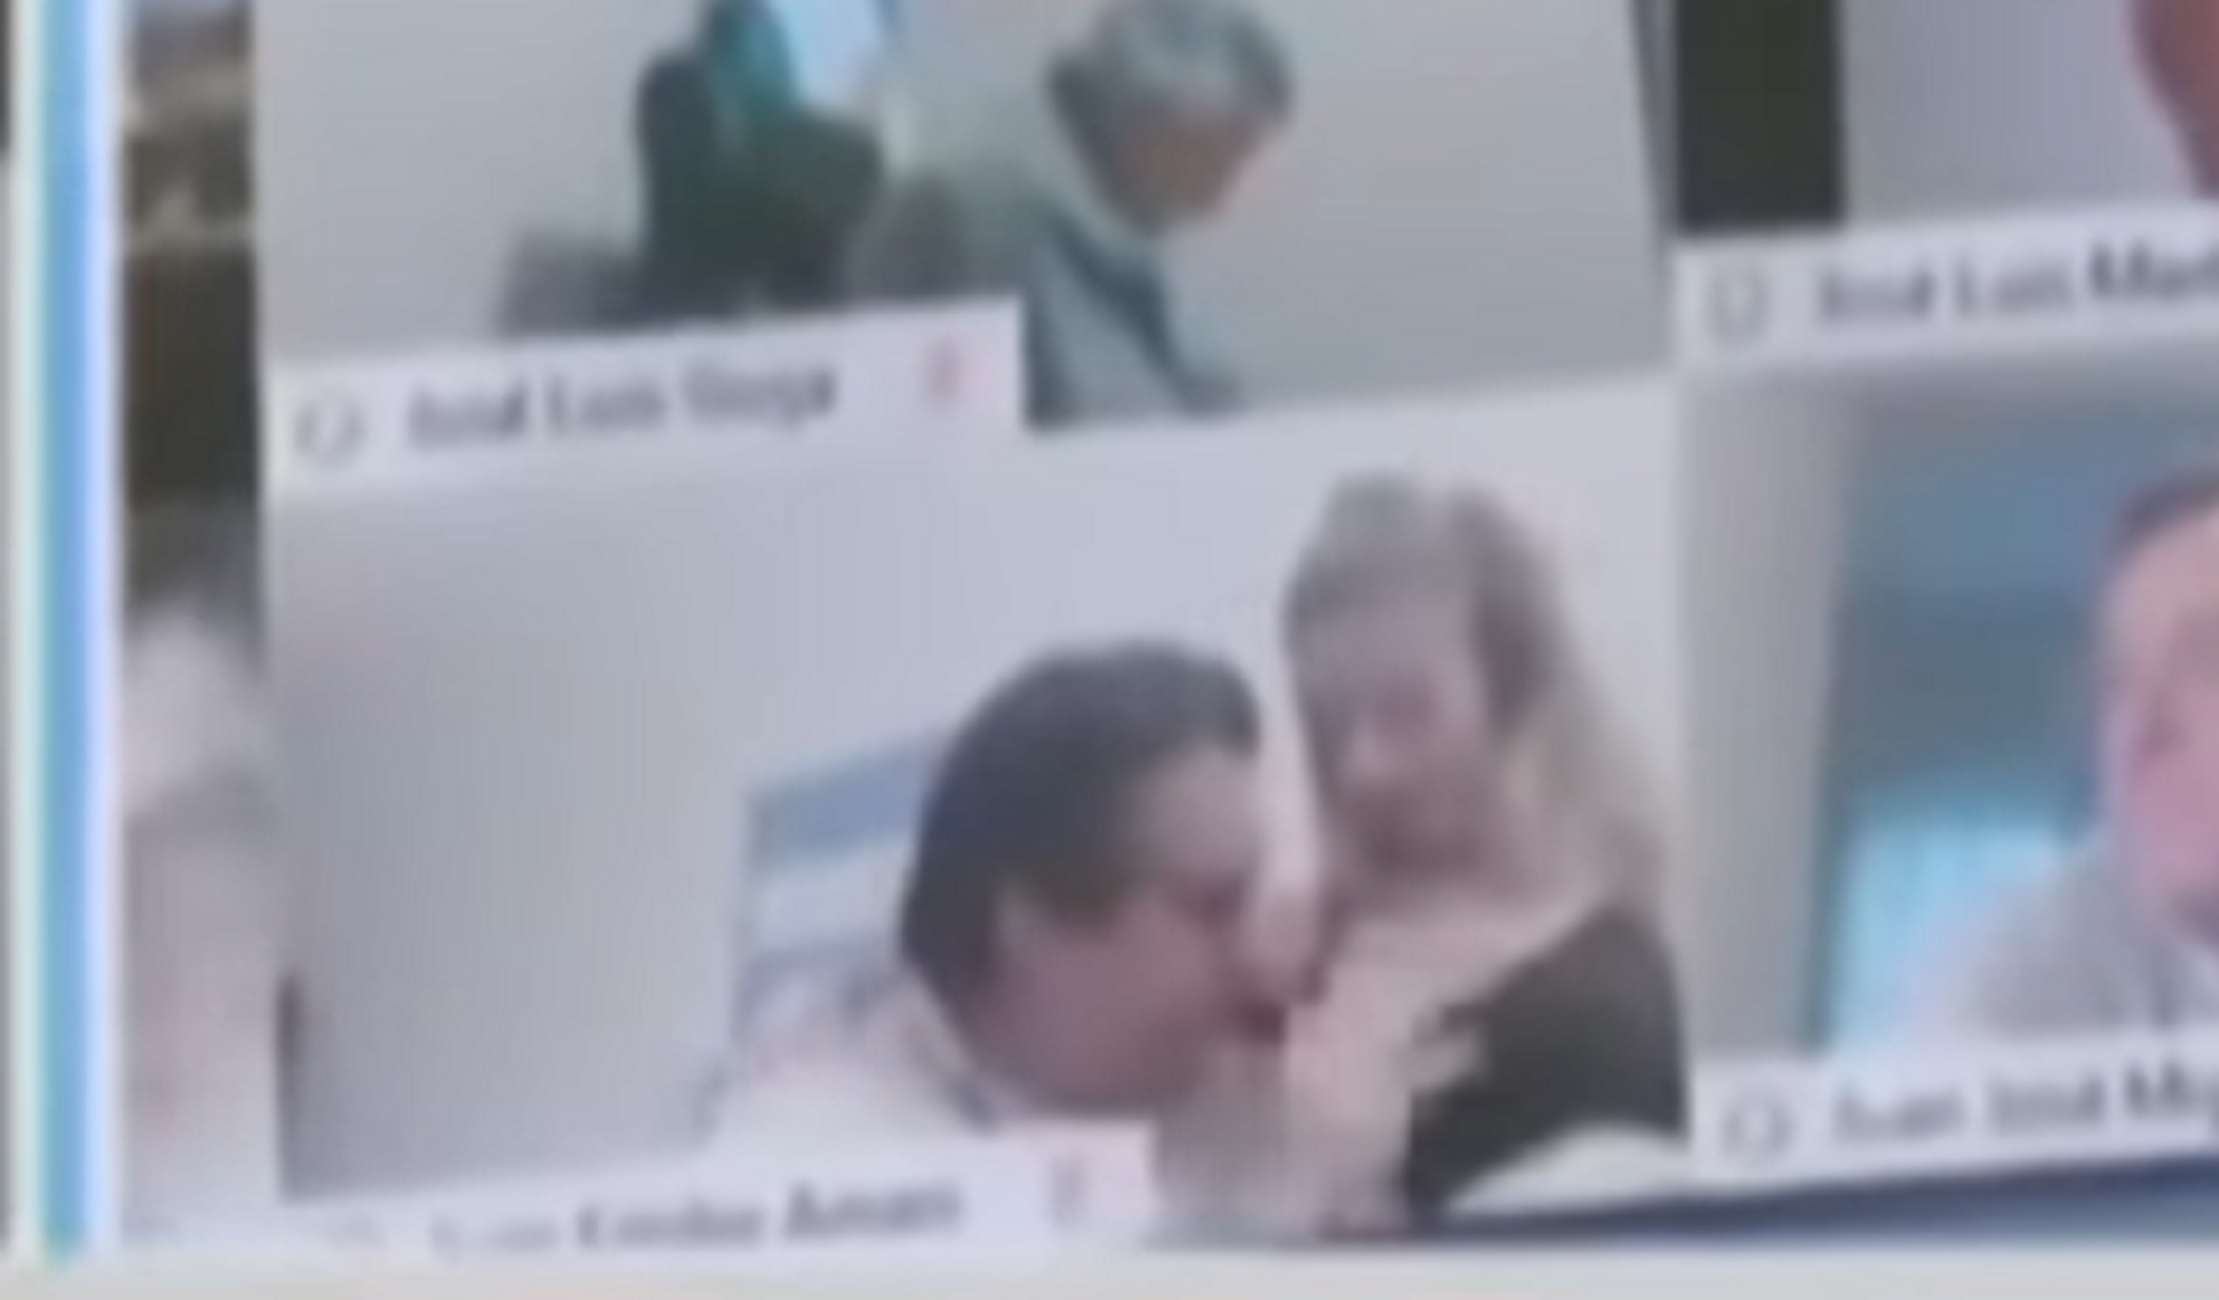 “Μερακλής” βουλευτής φιλούσε το… στήθος της γυναίκας του σε live τηλεδιάσκεψη – video